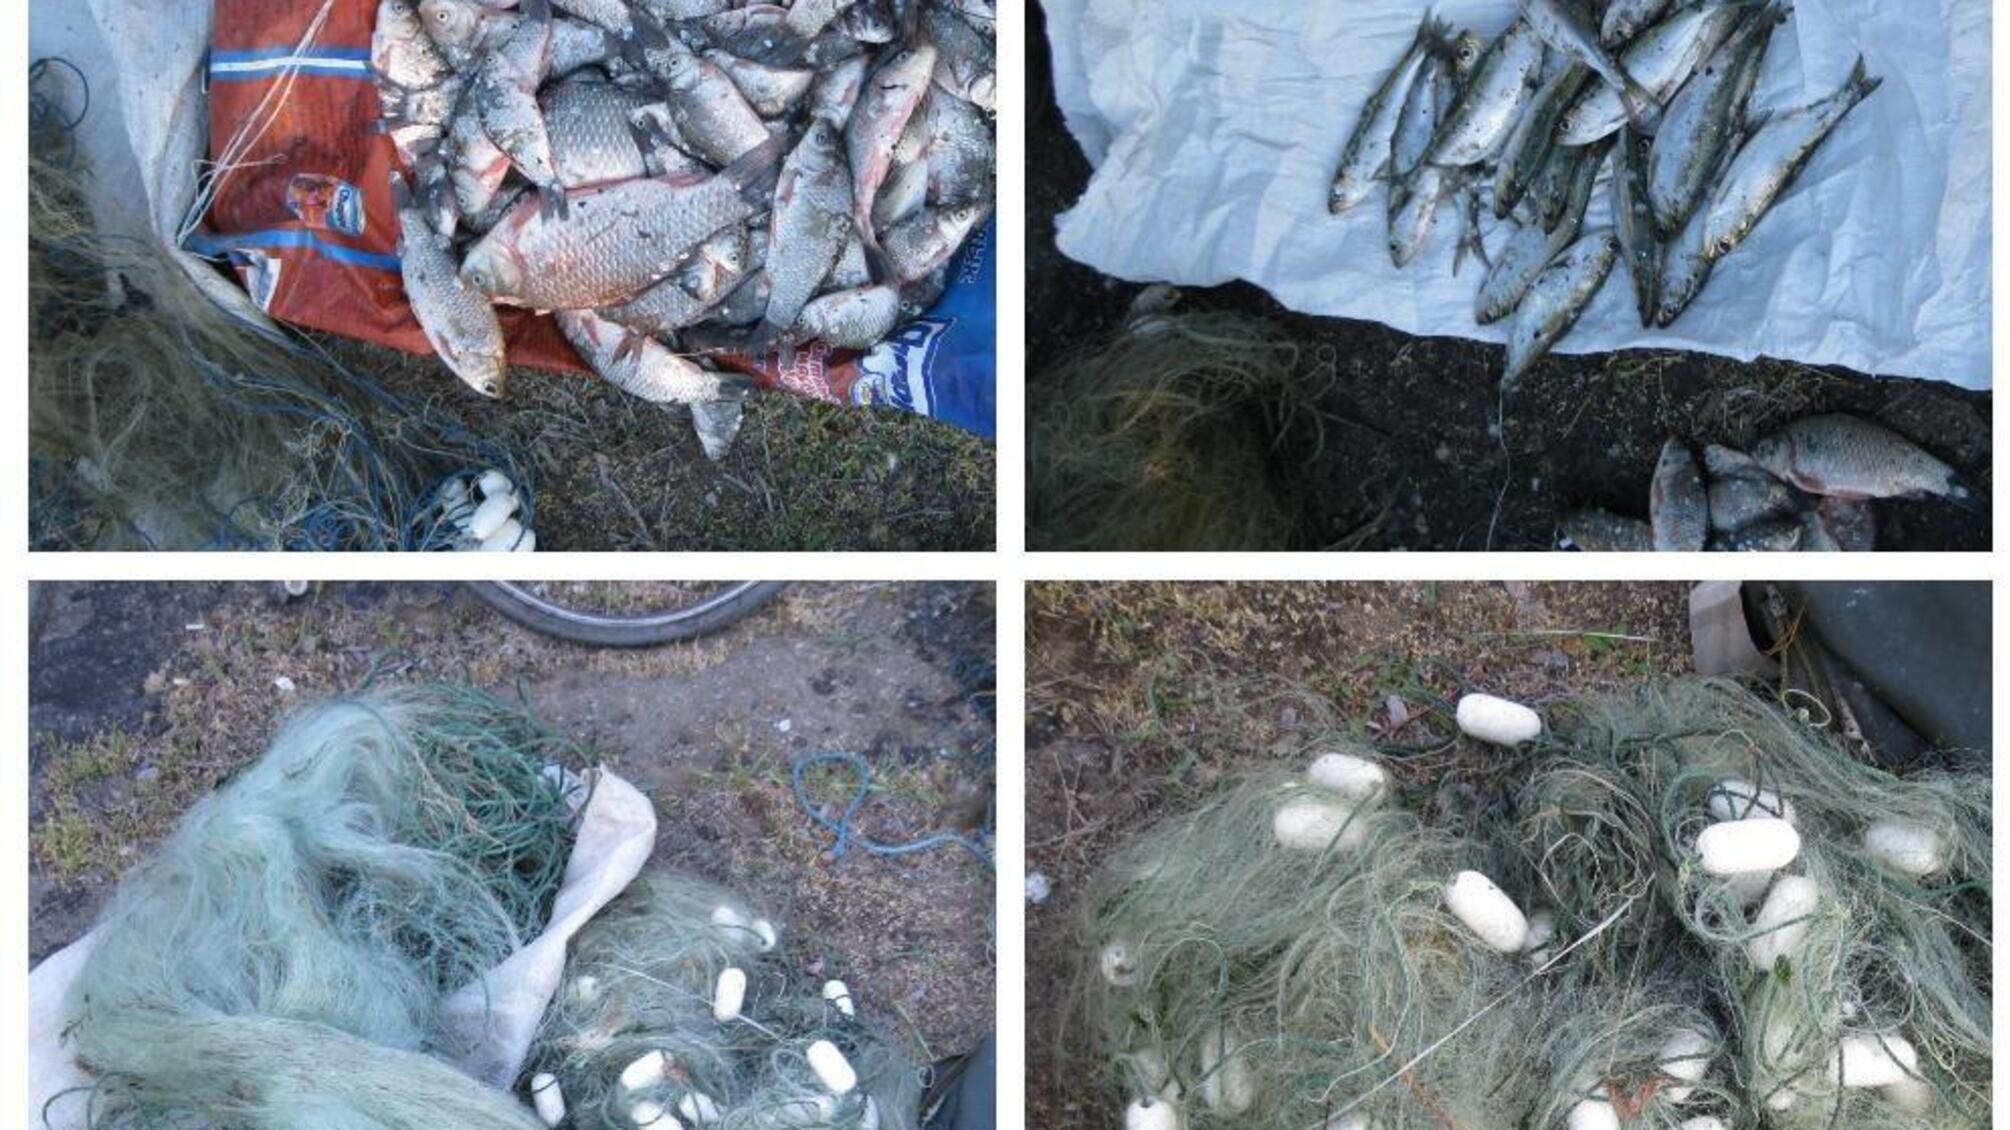 Поліцейські оголосили підозру в незаконному зайнятті рибним промислом жителю Білгород-Дністровського району